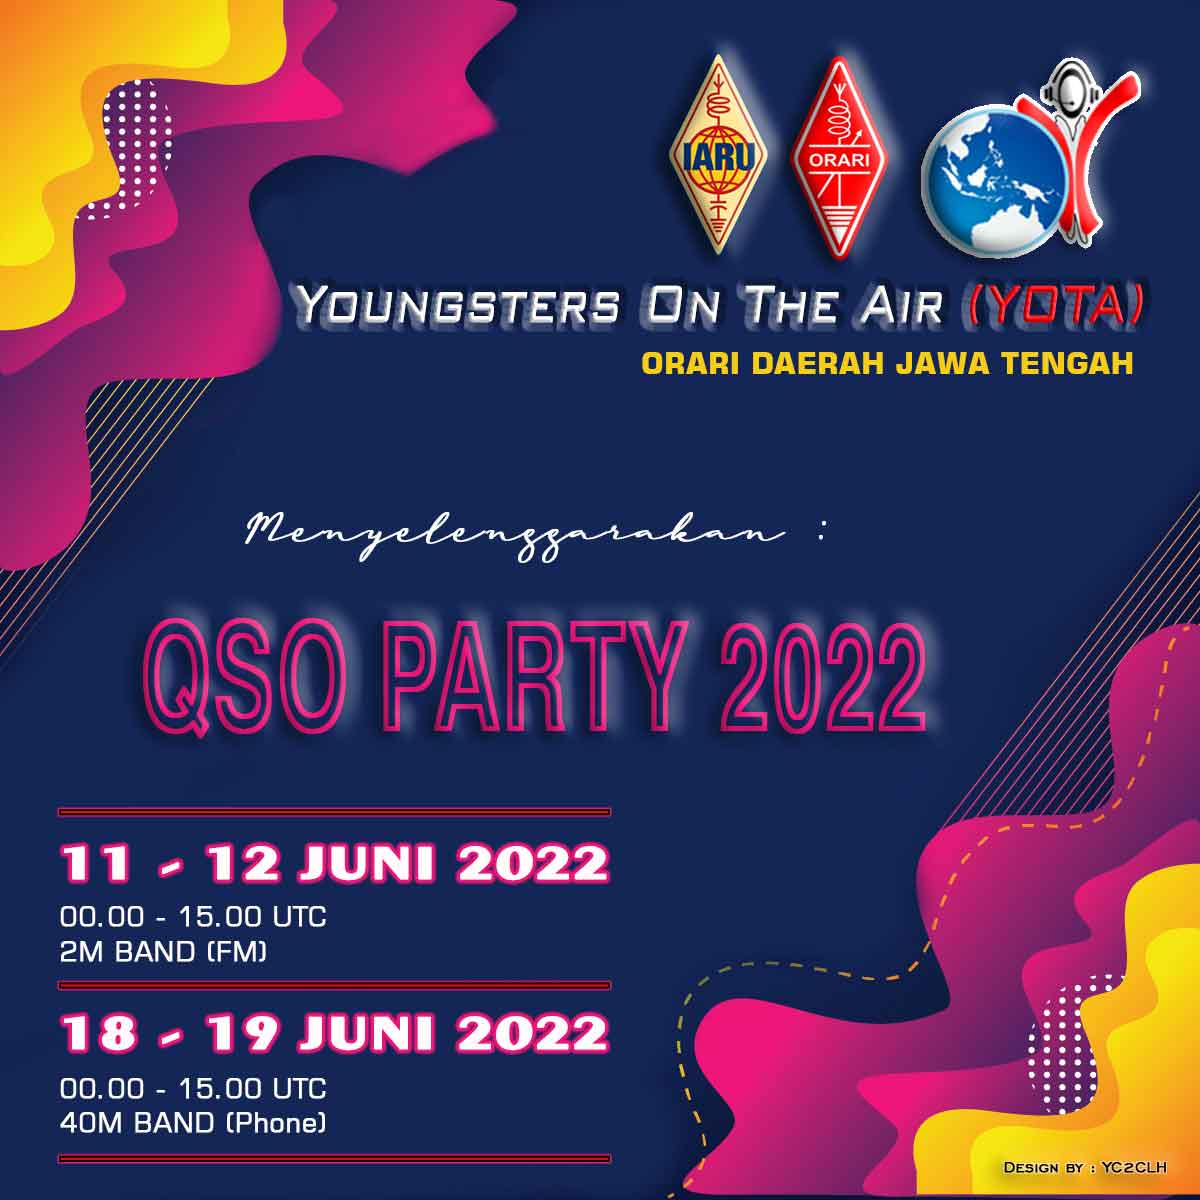 YOTA QSO Party 2022 Orari Daerah Jawa Tengah